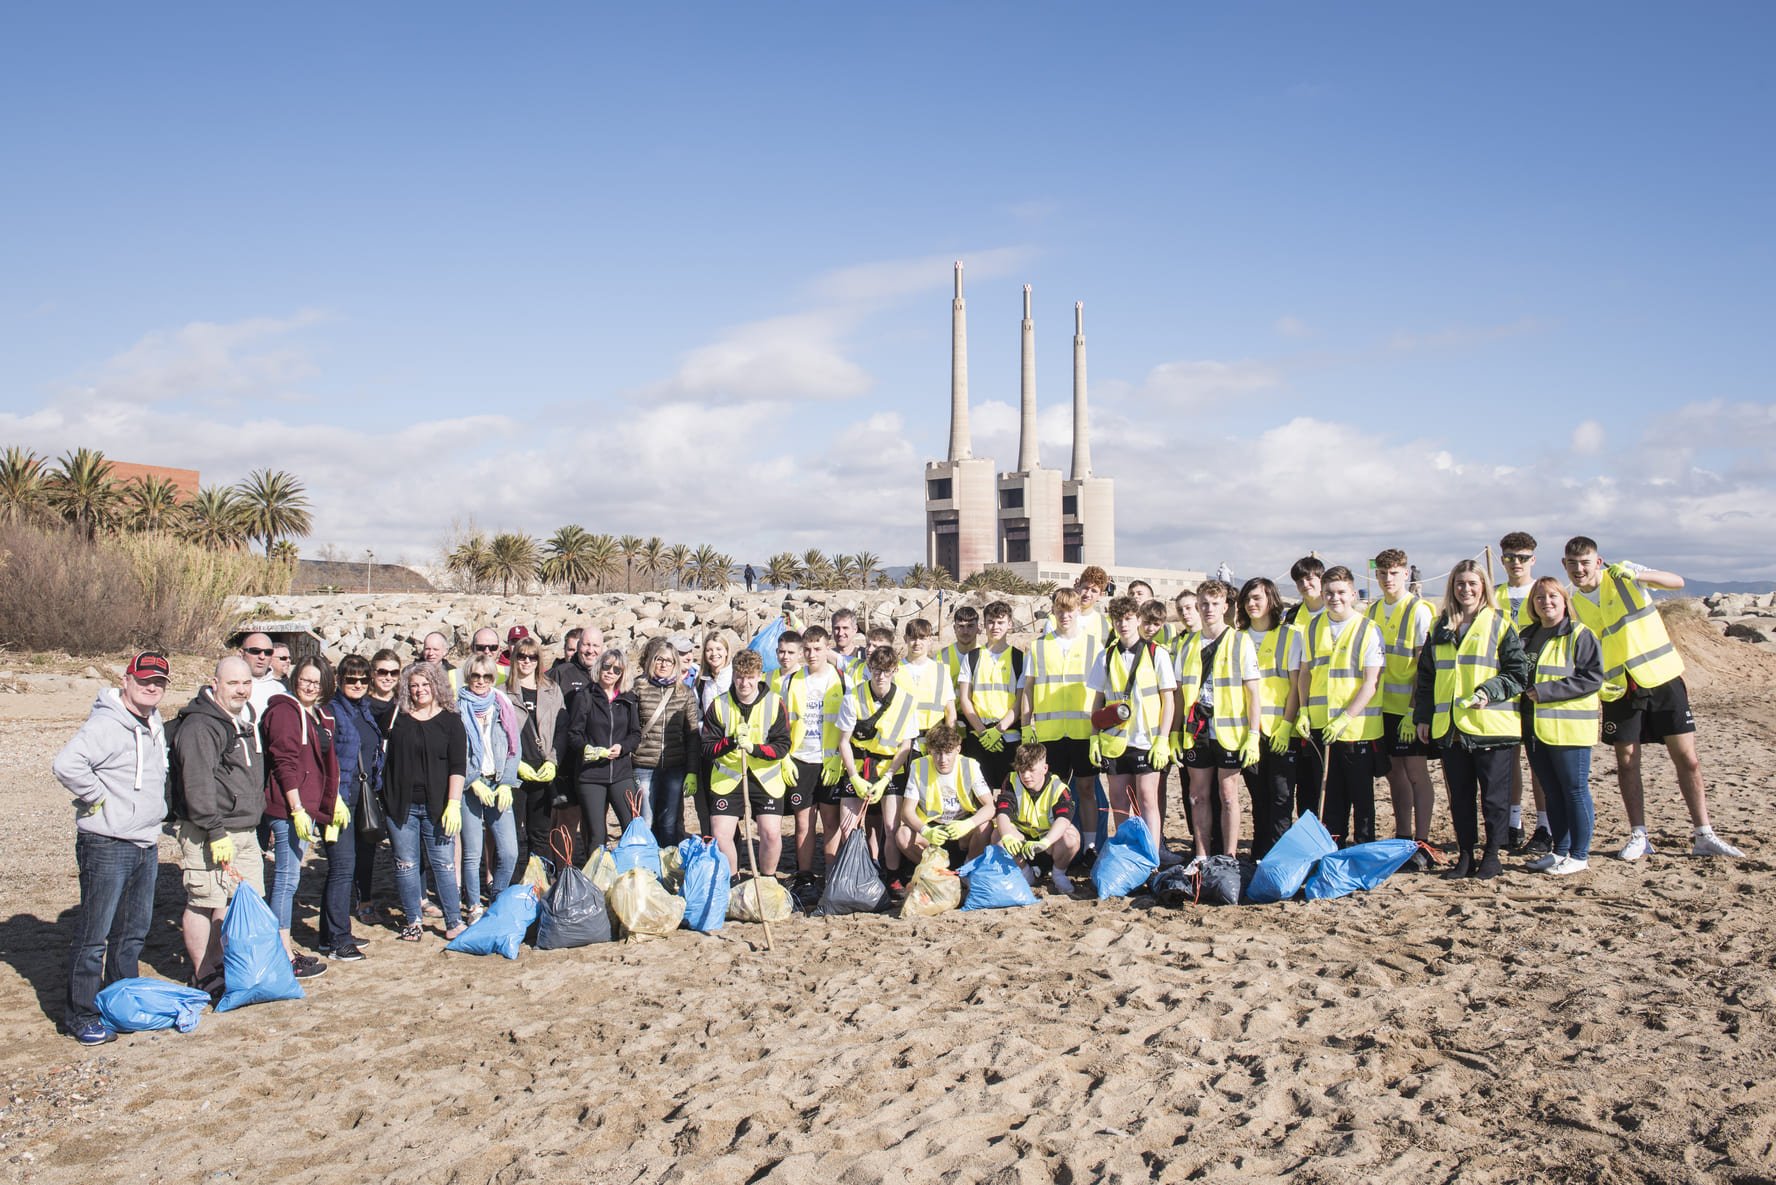 Voluntariado ambiental con el equipo Club Rugby de Mold